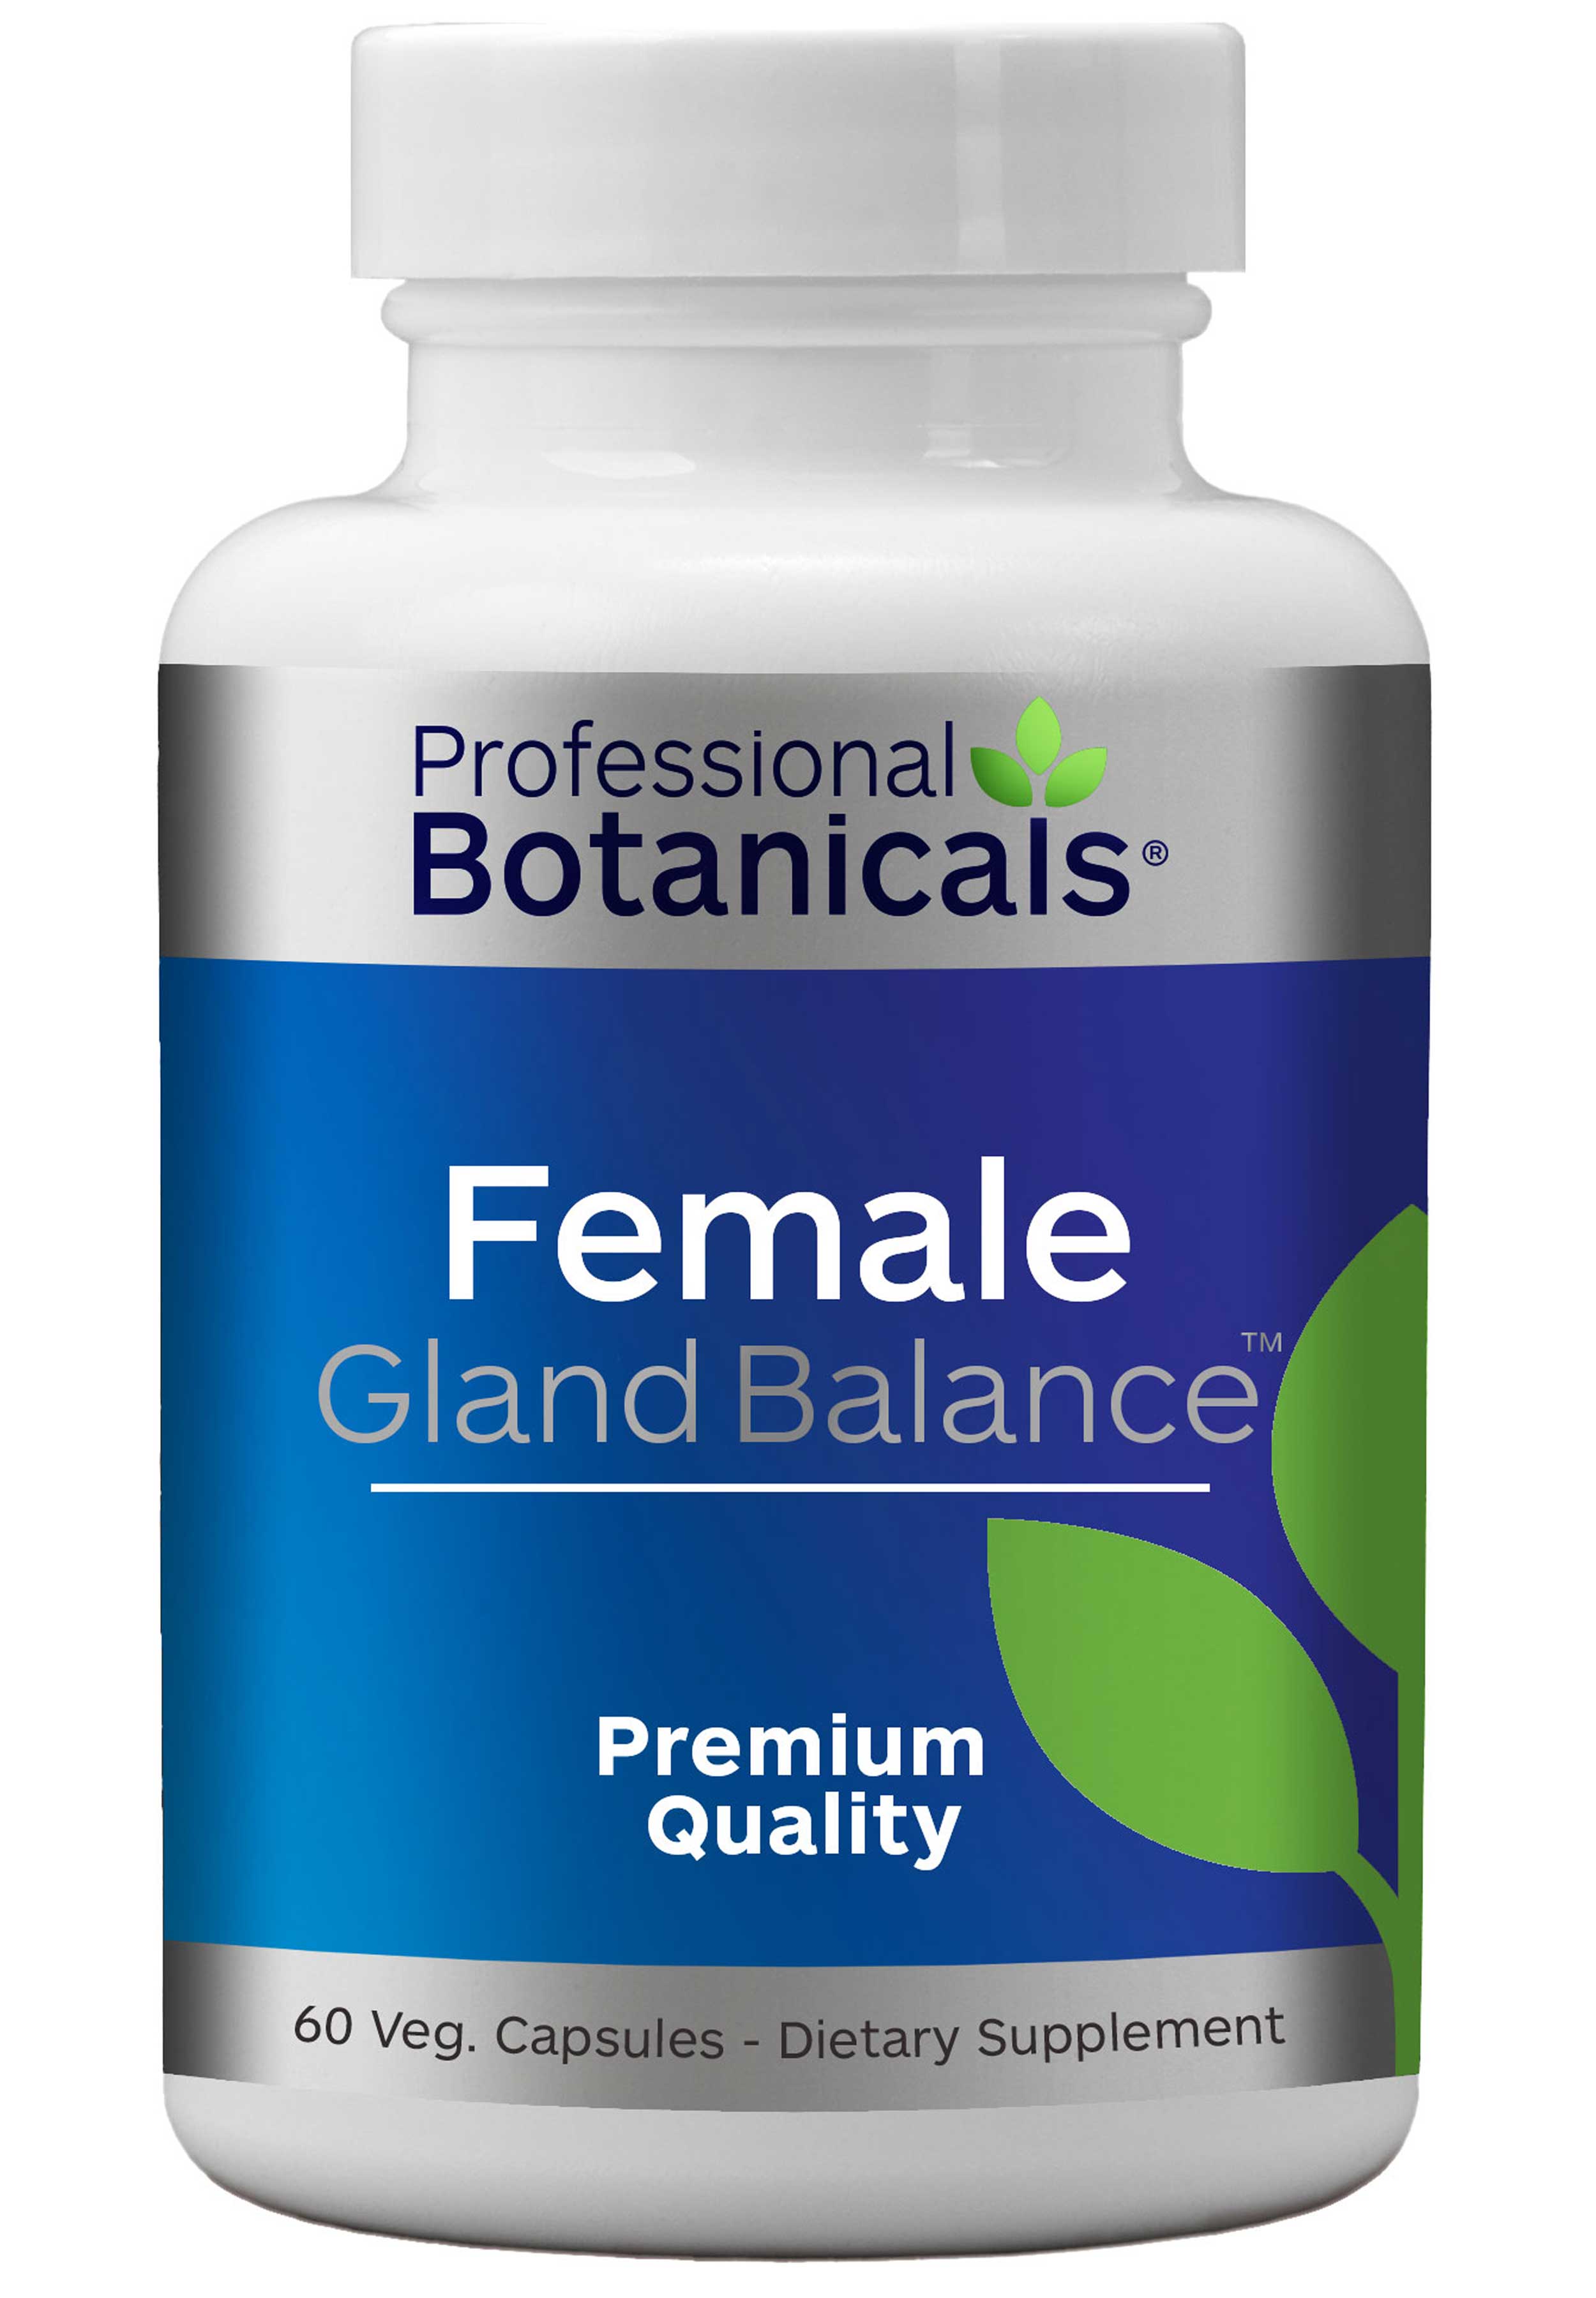 Professional Botanicals Female Gland Balance